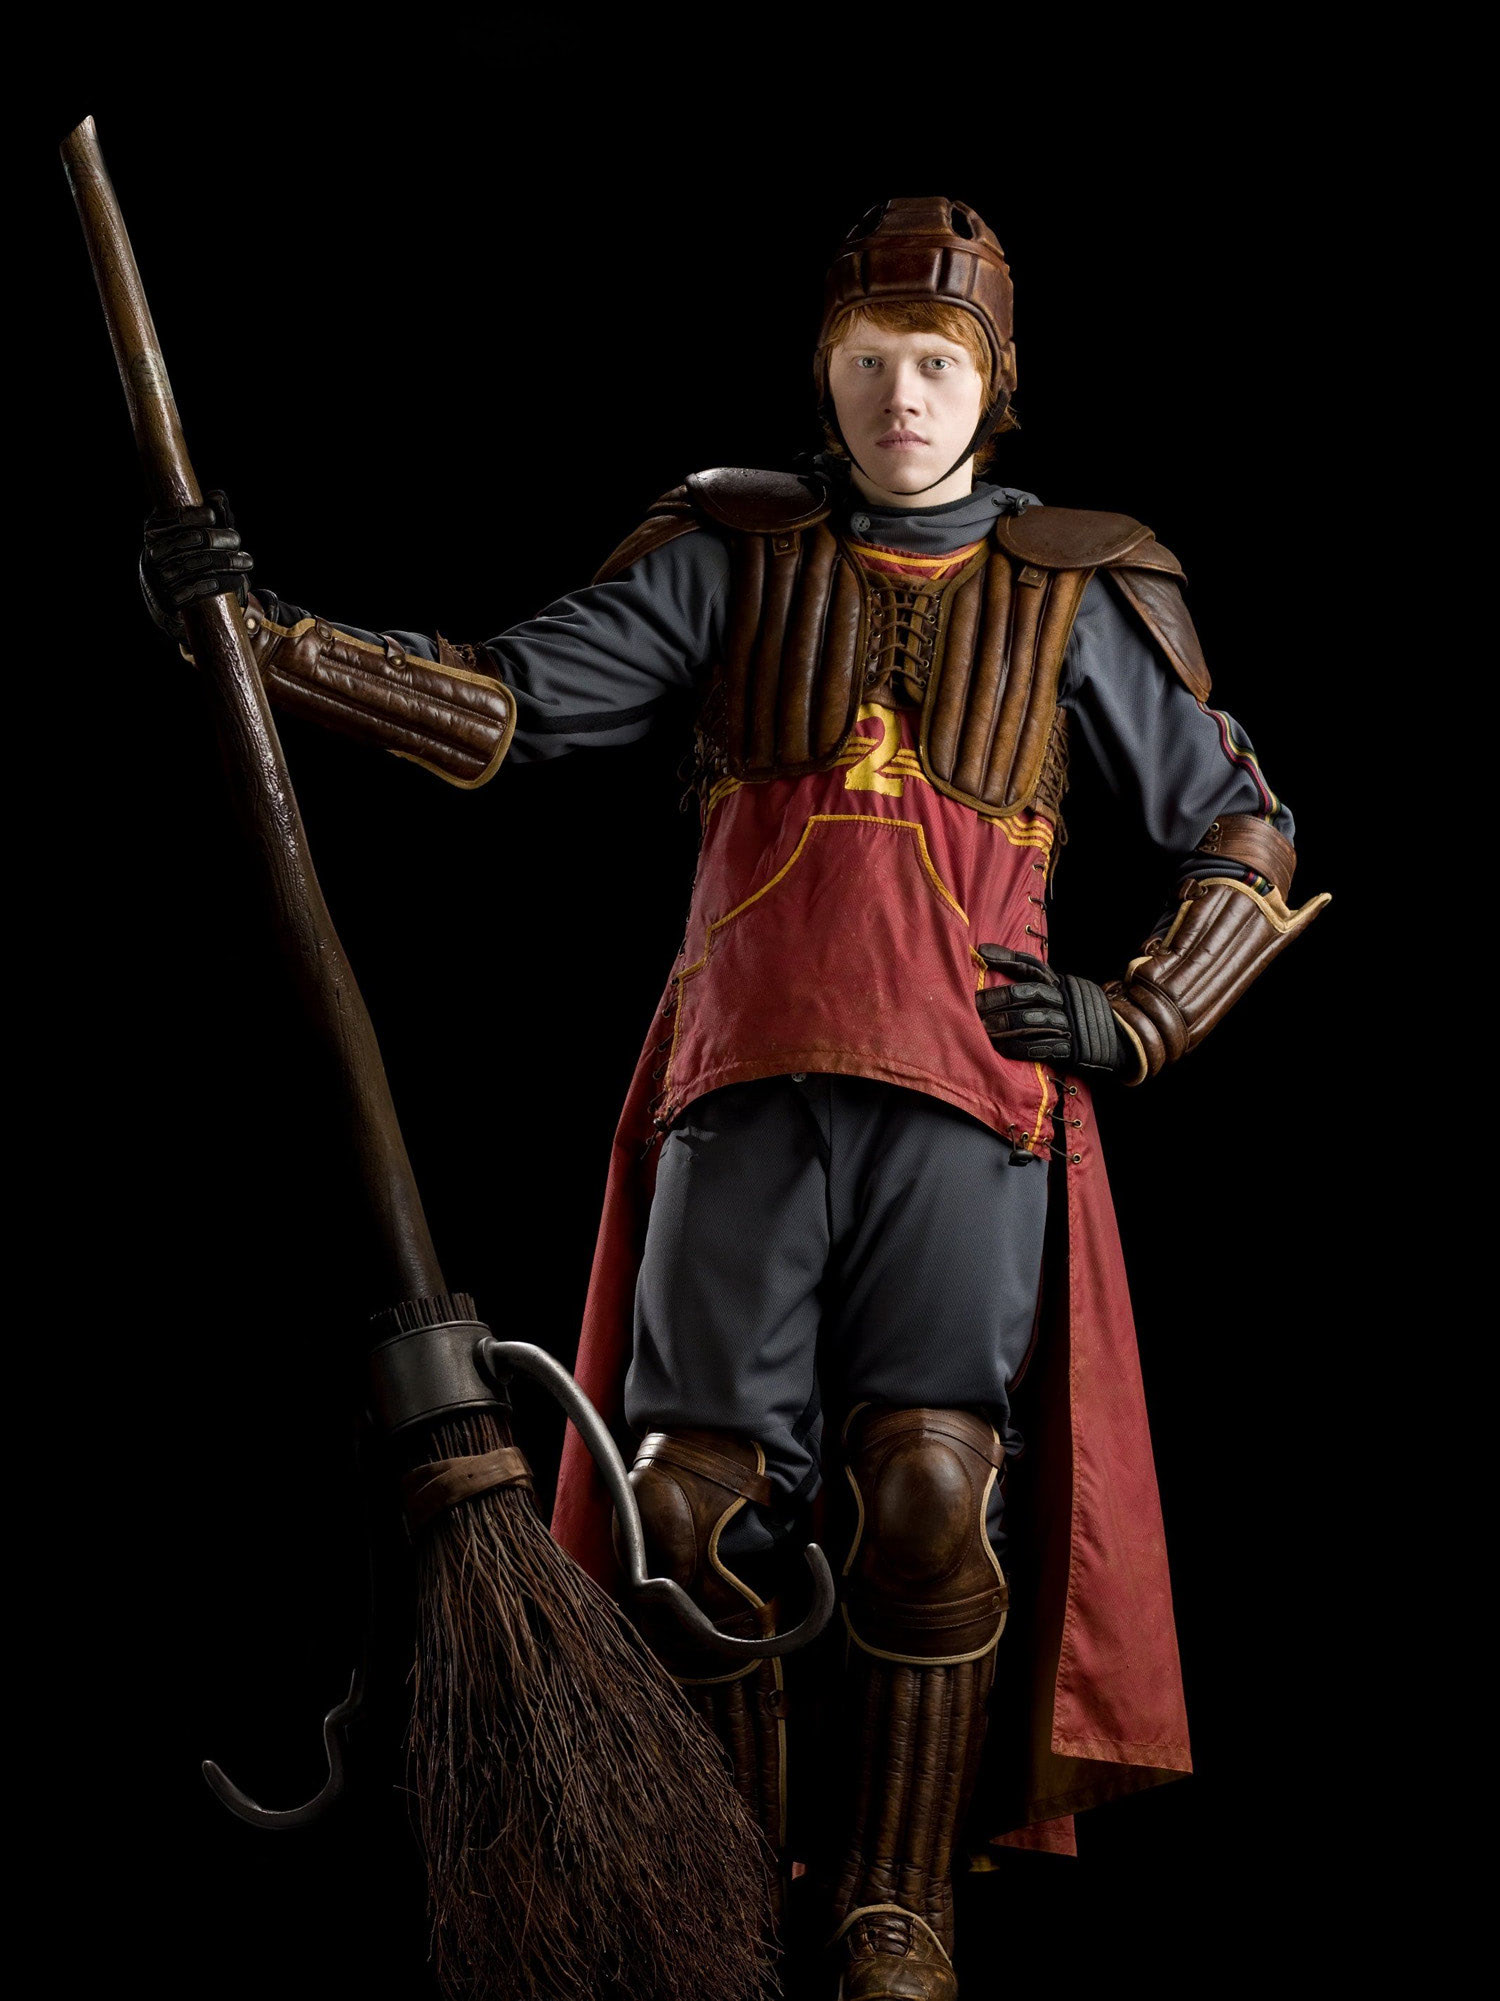 Portrait of Ron Weasley in Quidditch robes